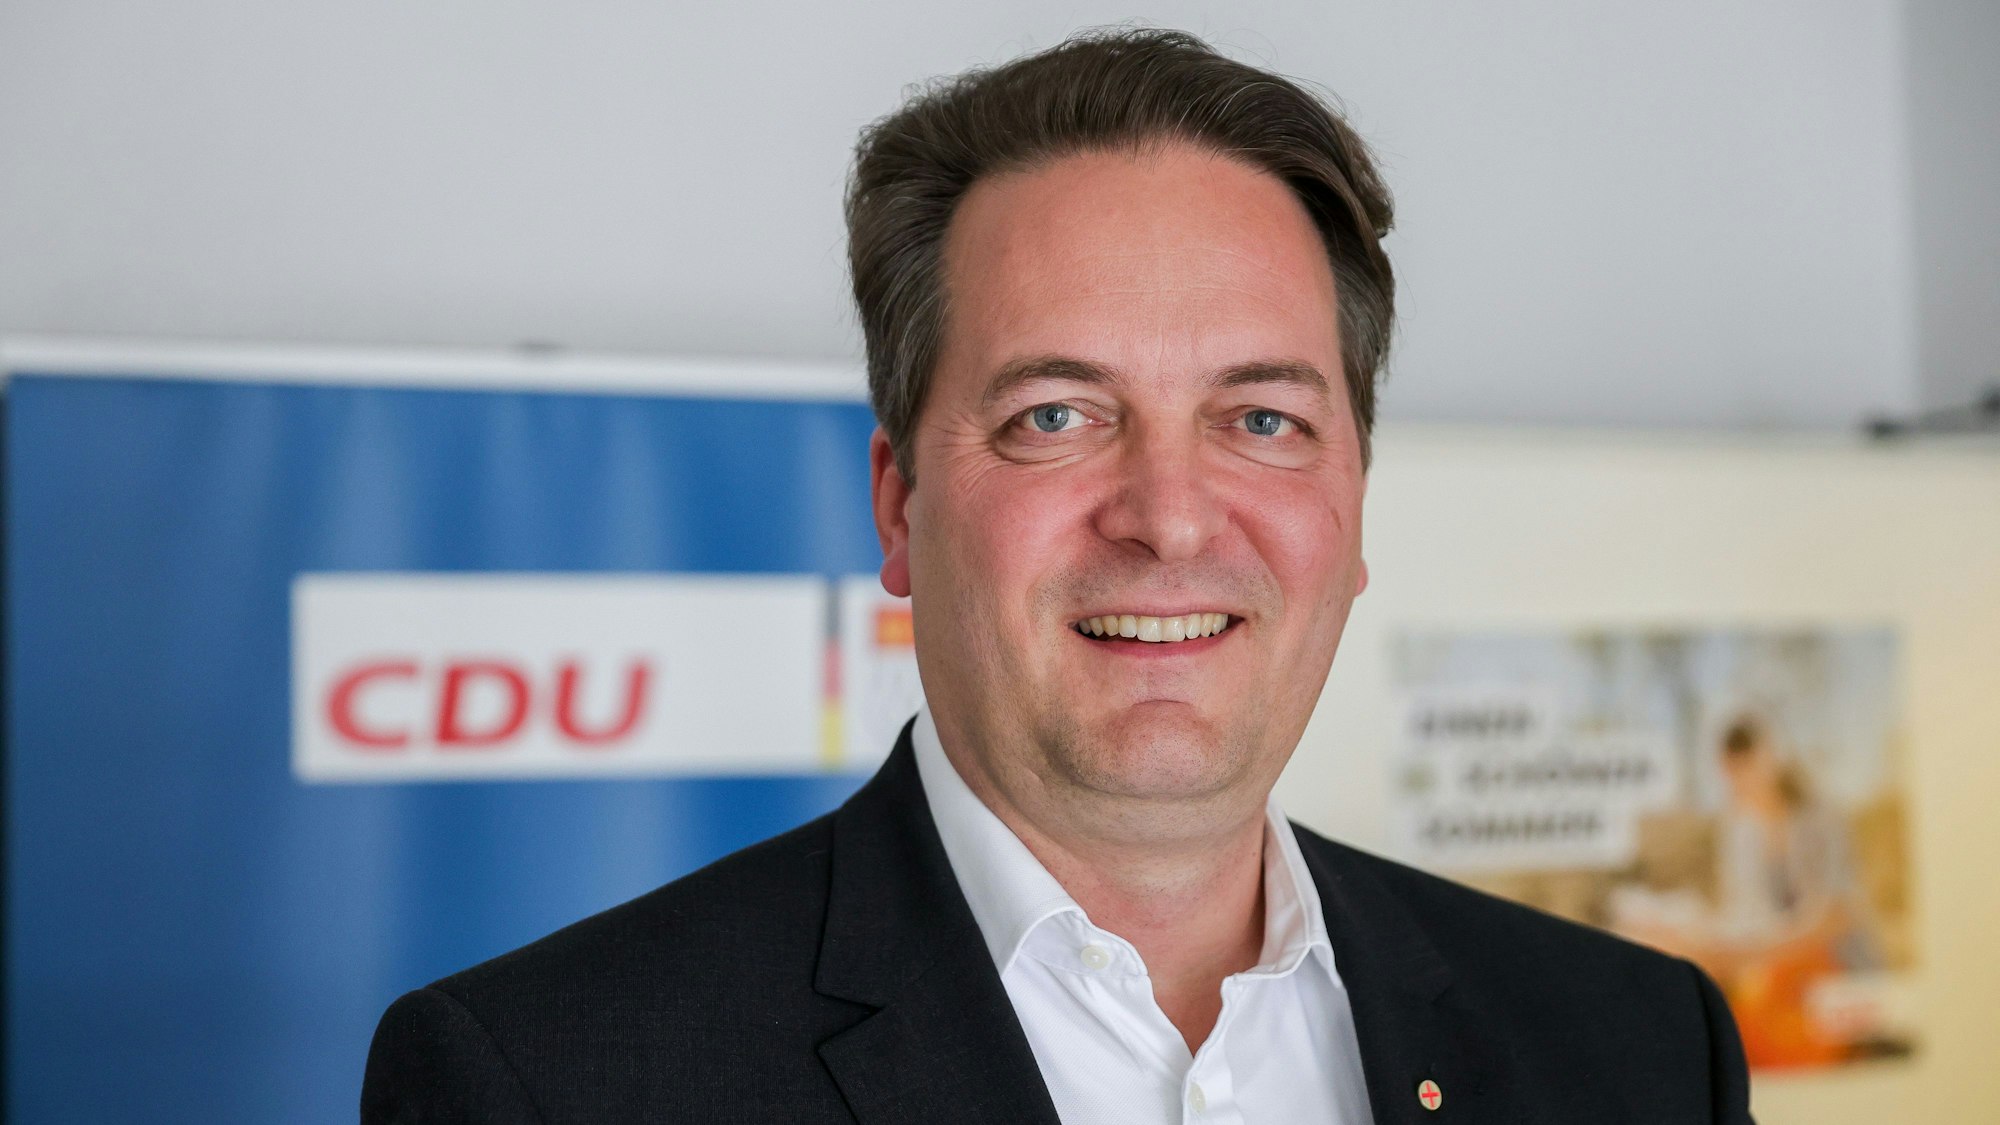 Karl Mandl ist seit März CDU-Vorsitzender.